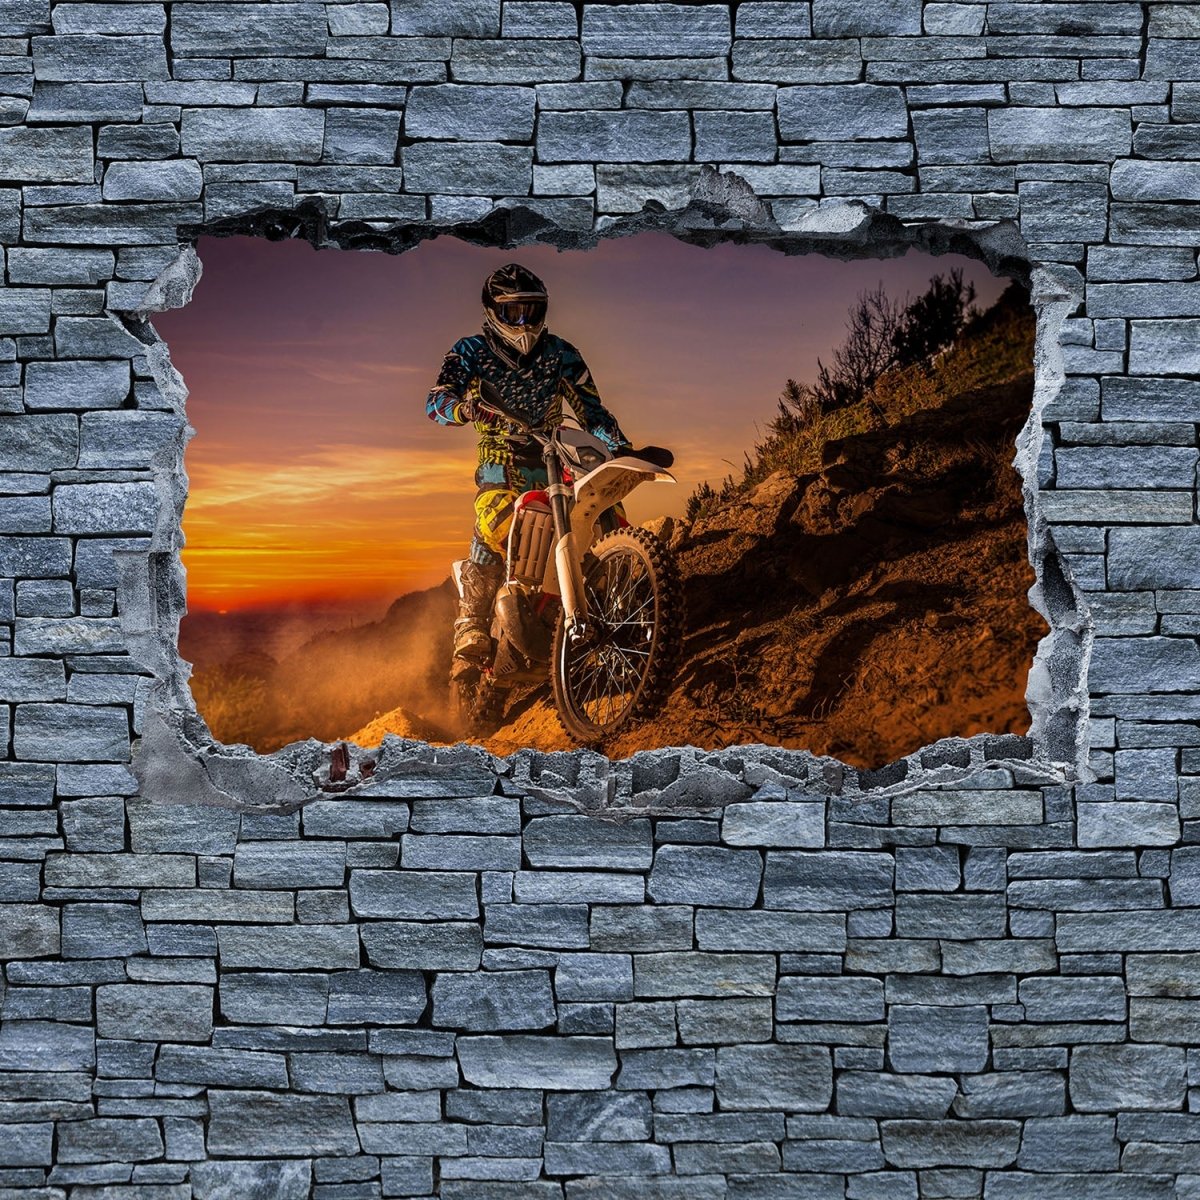 Beistelltisch 3D Extreme Biker- grobe Steinmauer M0642 entdecken - Bild 2